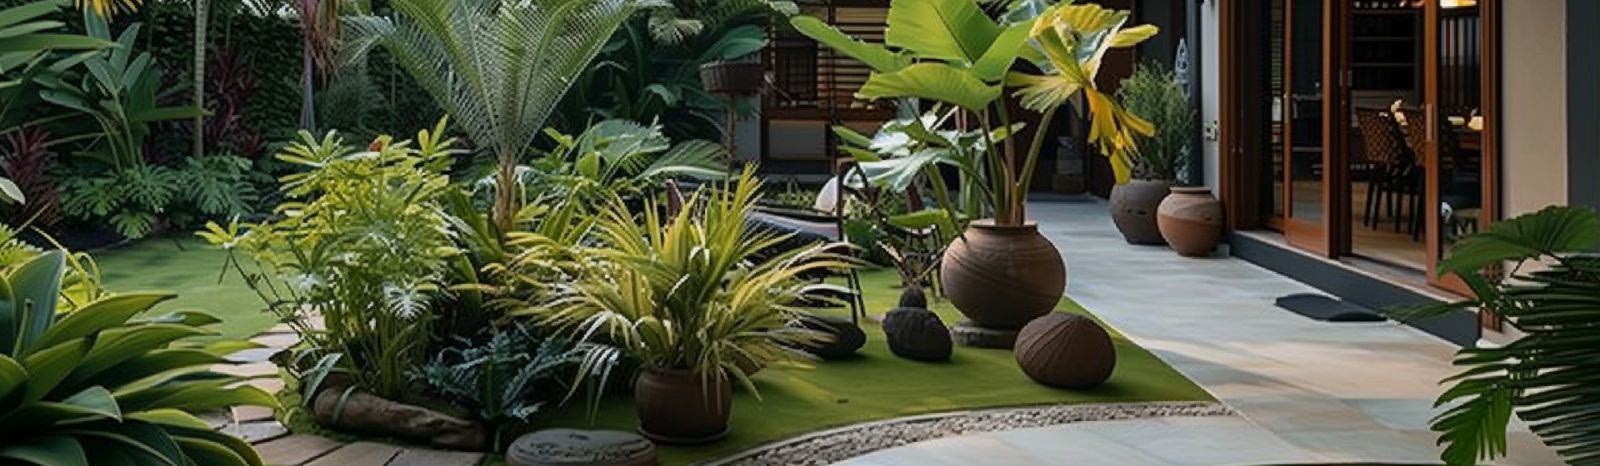 Jardin exotique : conseils pour un jardin tropical dans nos régions.